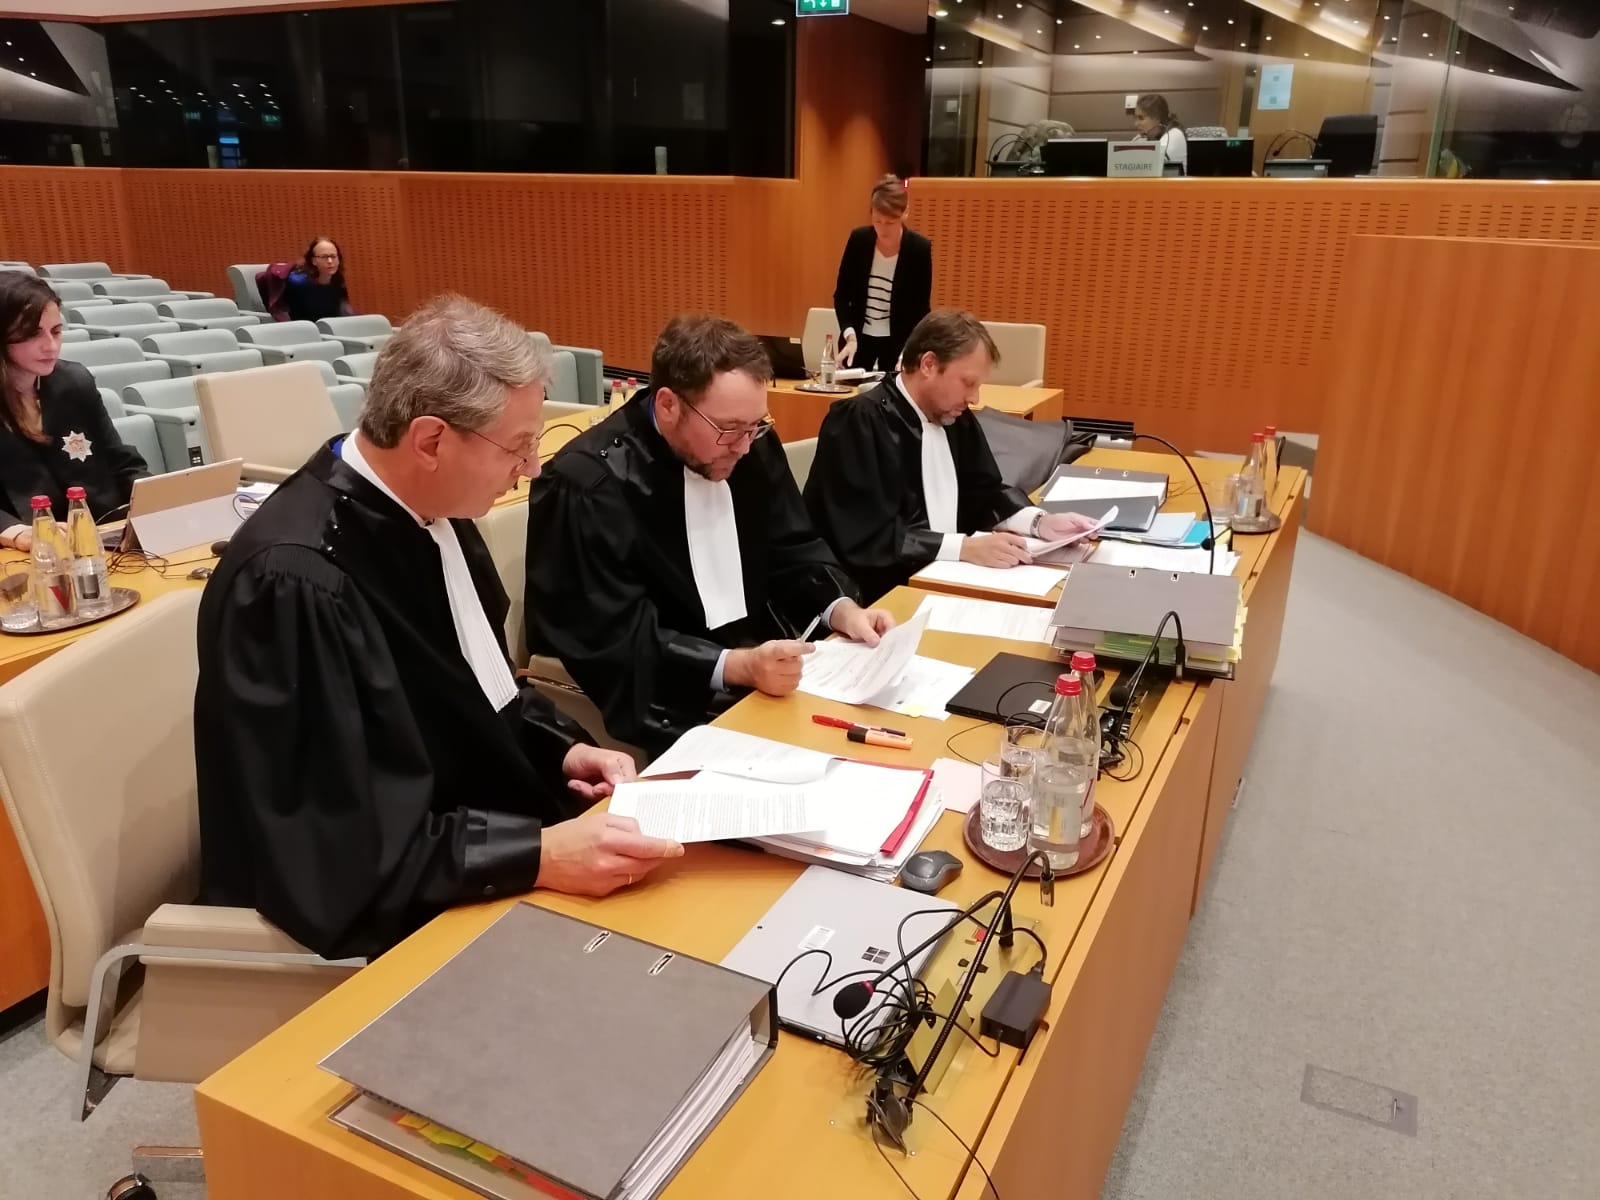 El abogado del Parlamento Europeo afirma que Puigdemont asumió el acta "quizás de forma ilegal"